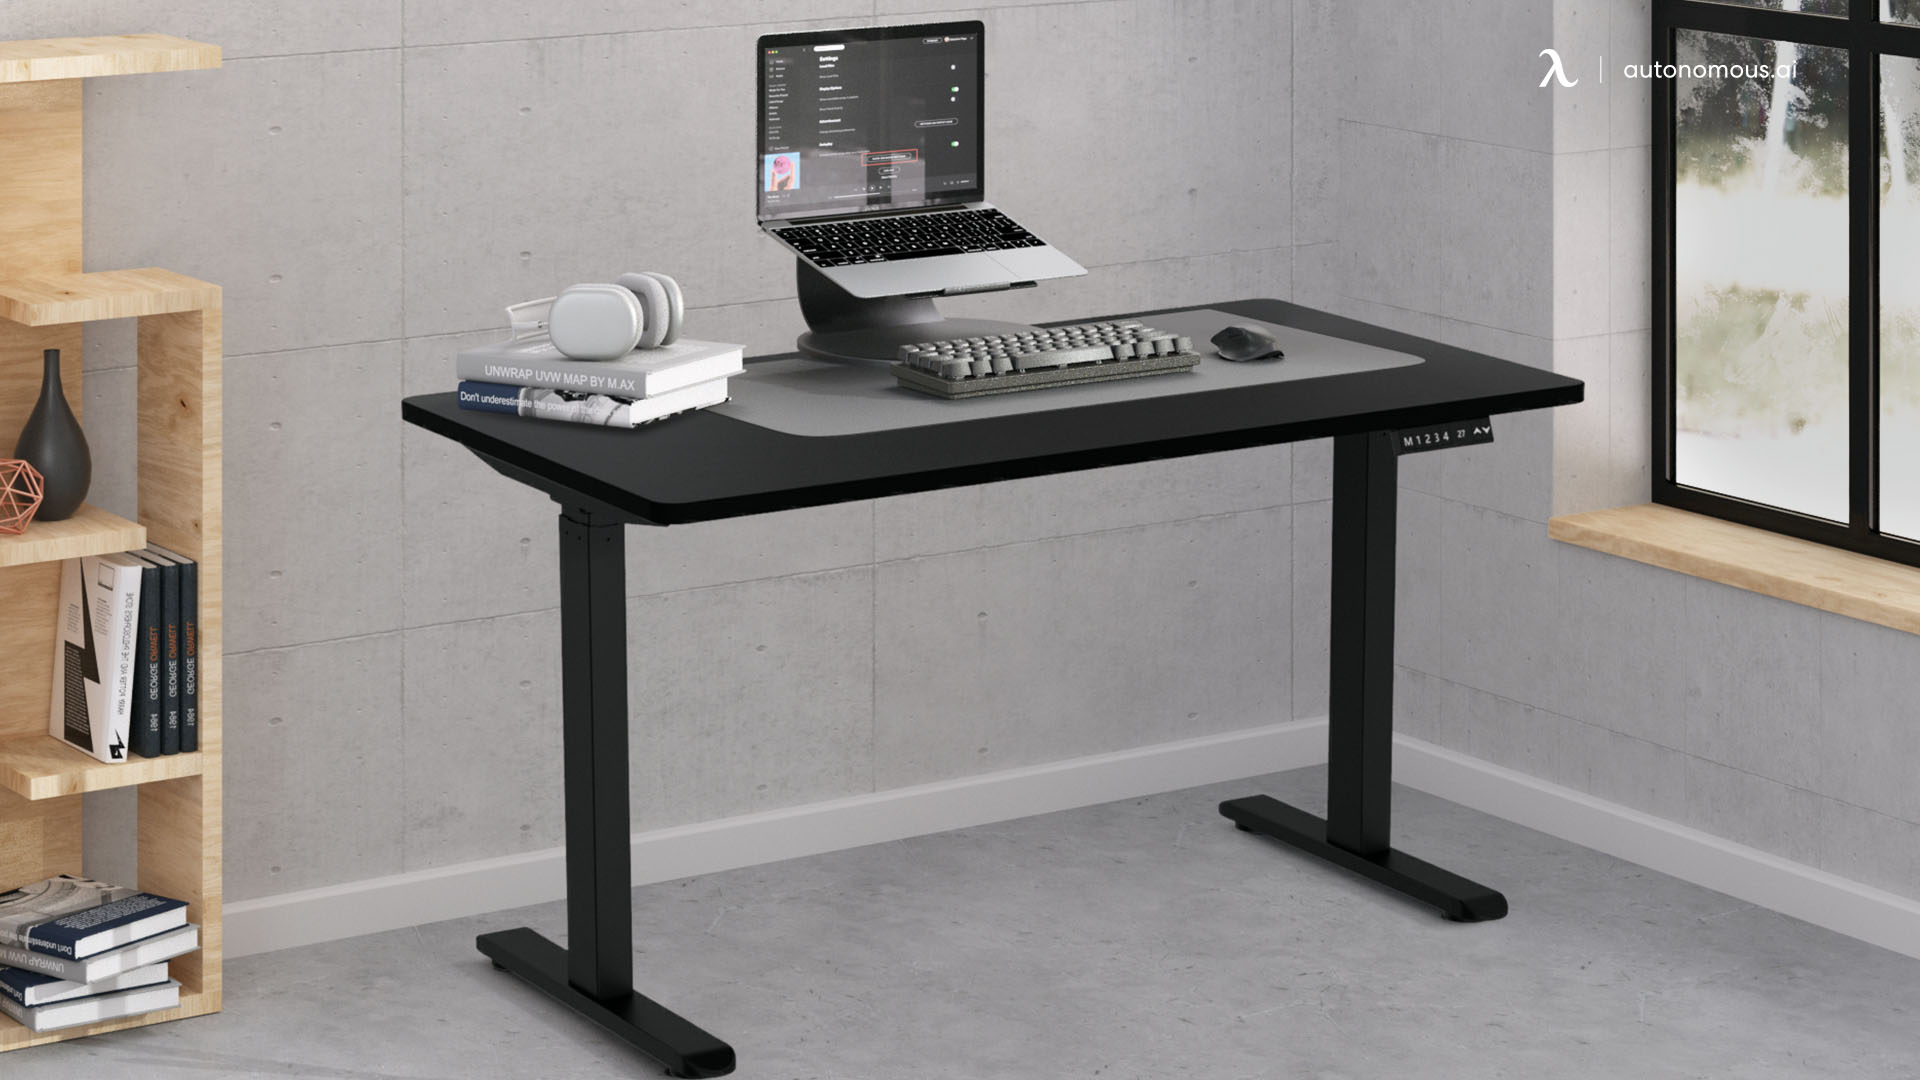 Autonomous Compact Desk by Wistopht: Programmable Keypad